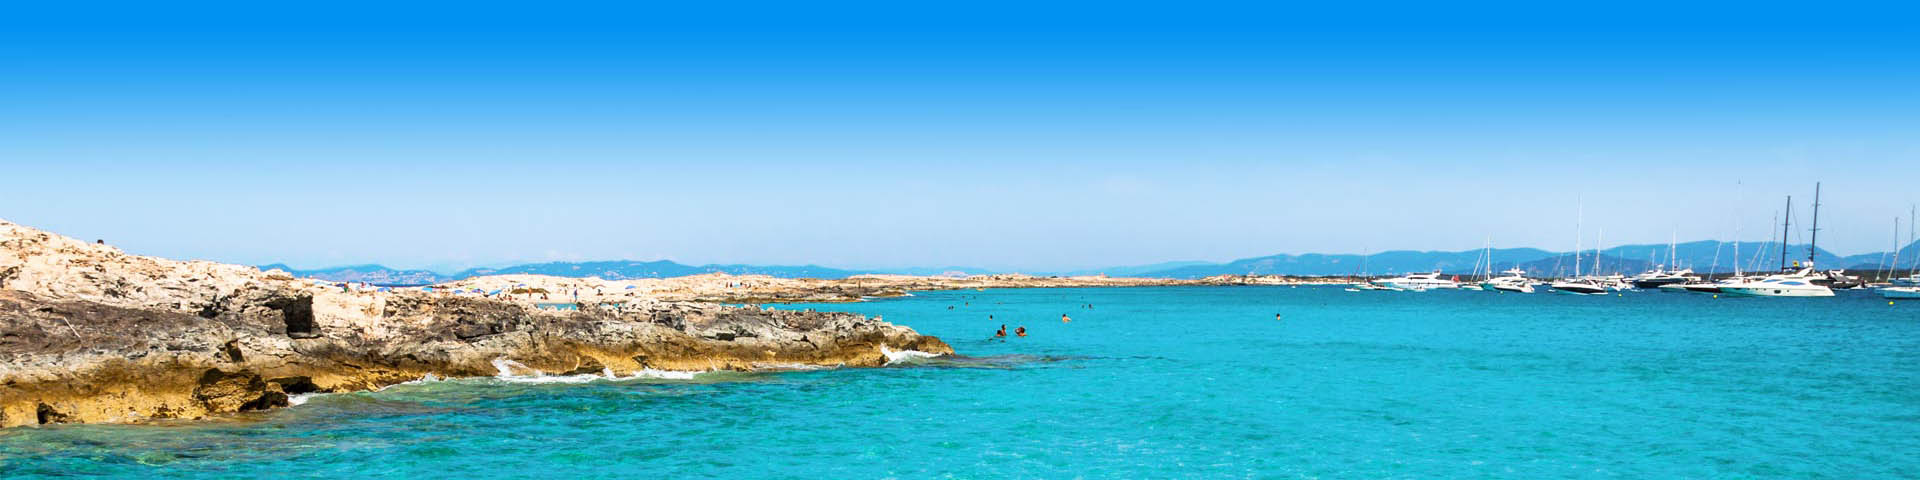 Prachtige Azuurblauwe zee met een bootje in Spanje. 